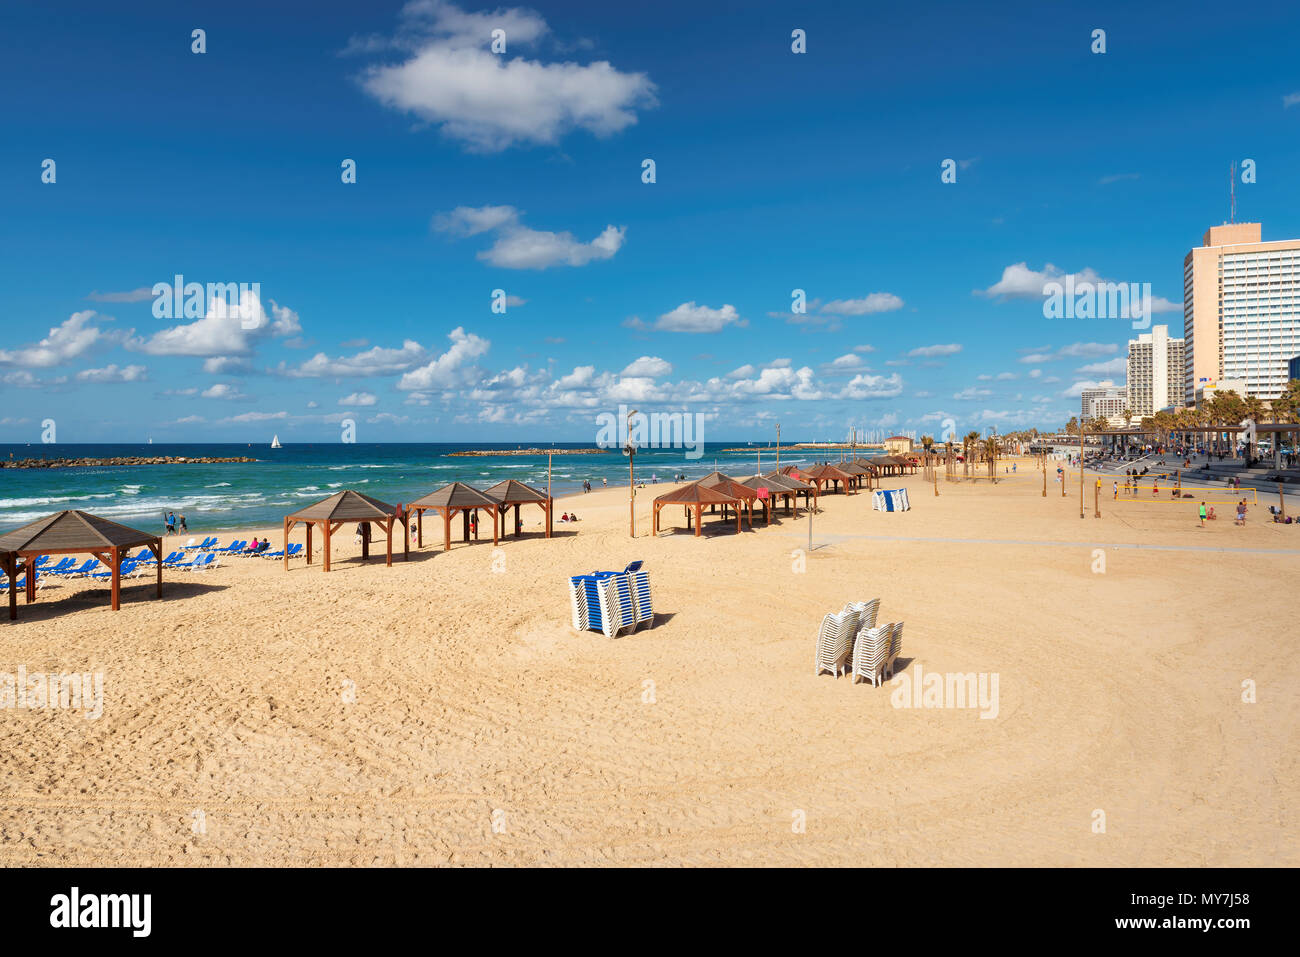 Belle vue sur la plage publique de Tel-Aviv sur la mer Méditerranée. Israël. Banque D'Images